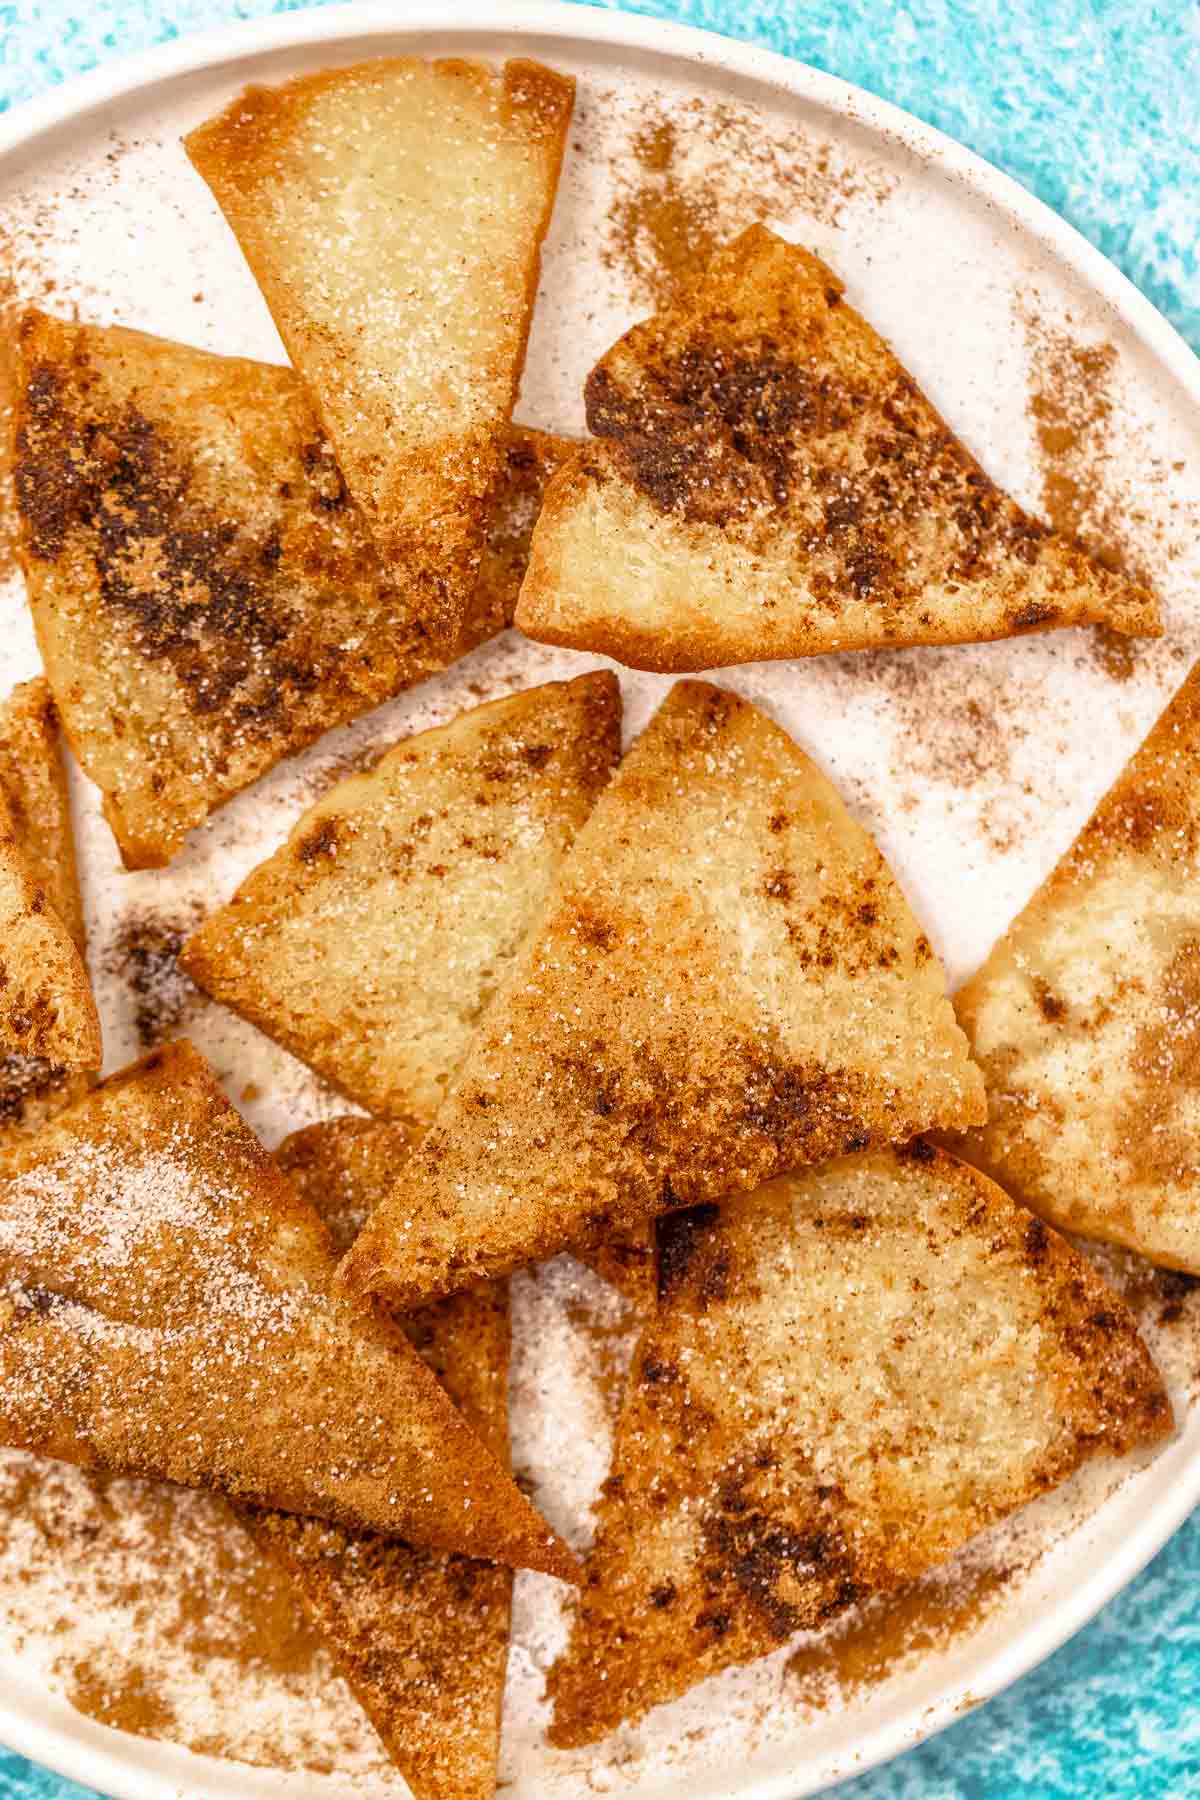 churro chip recipe with cinnamon and sugar.